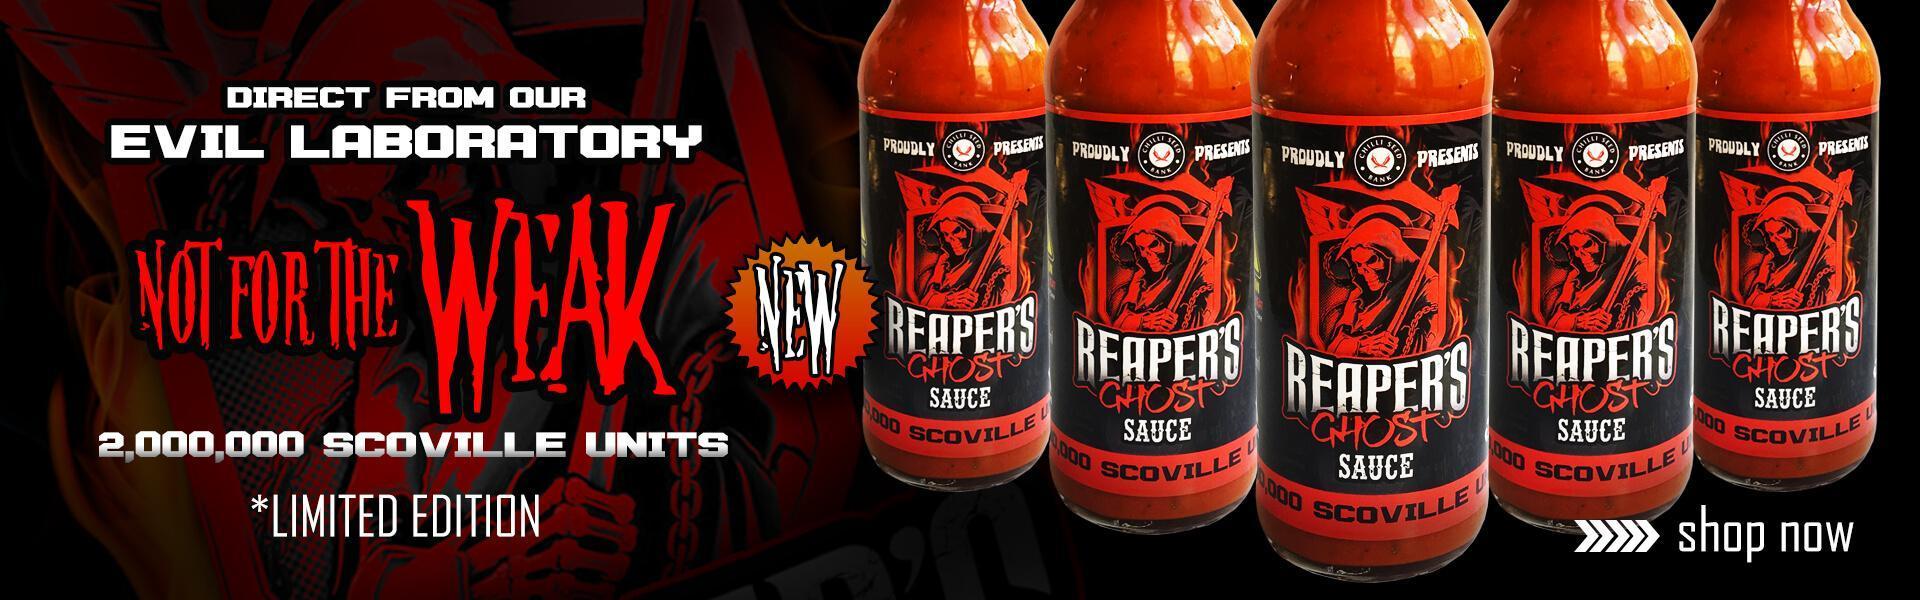 Buy Reaper Sauce